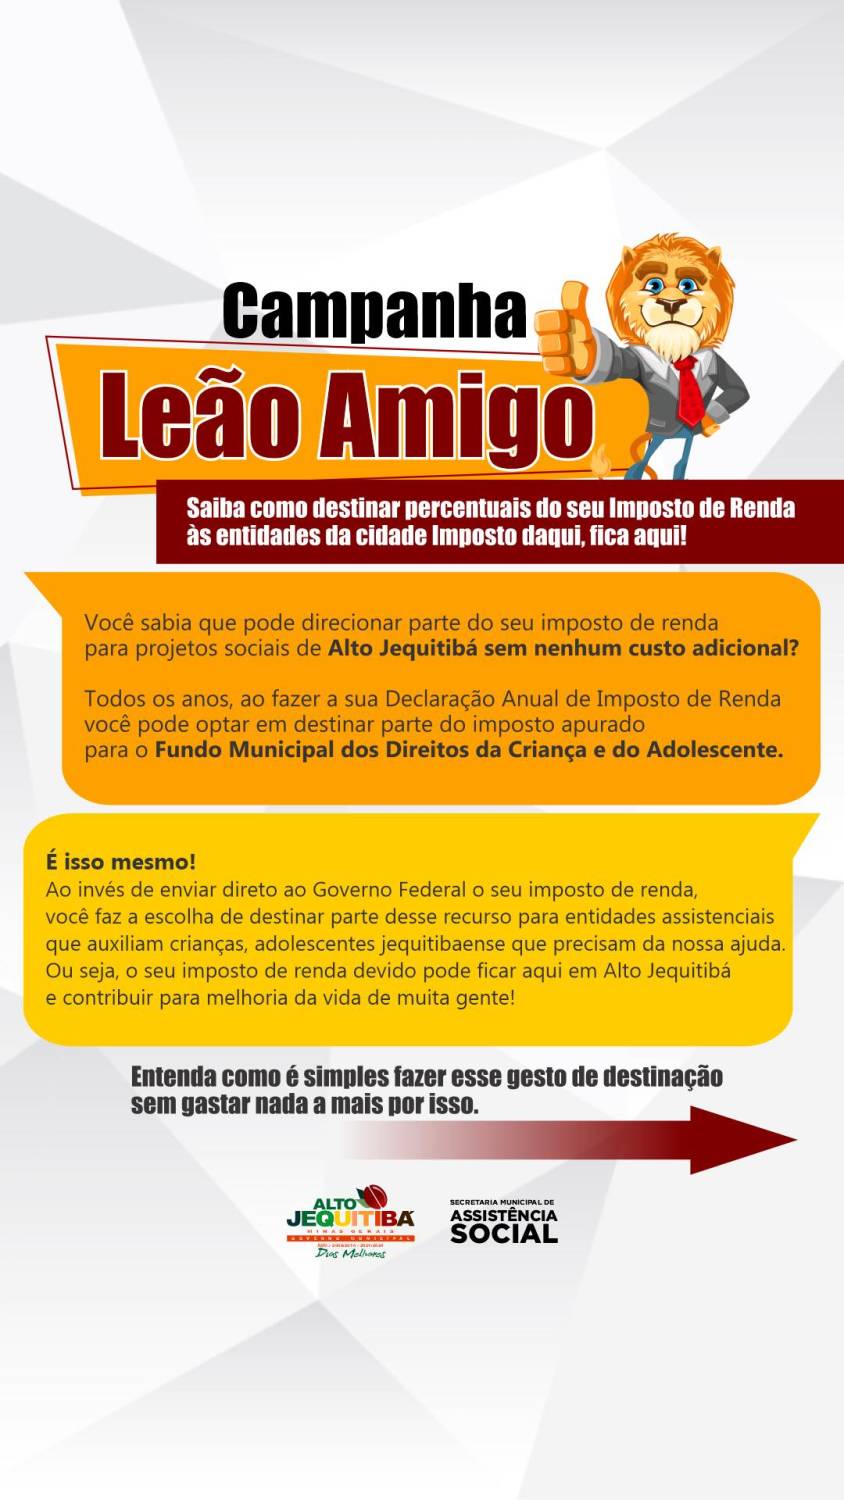 CAMPANHA LEÃO AMIGO!